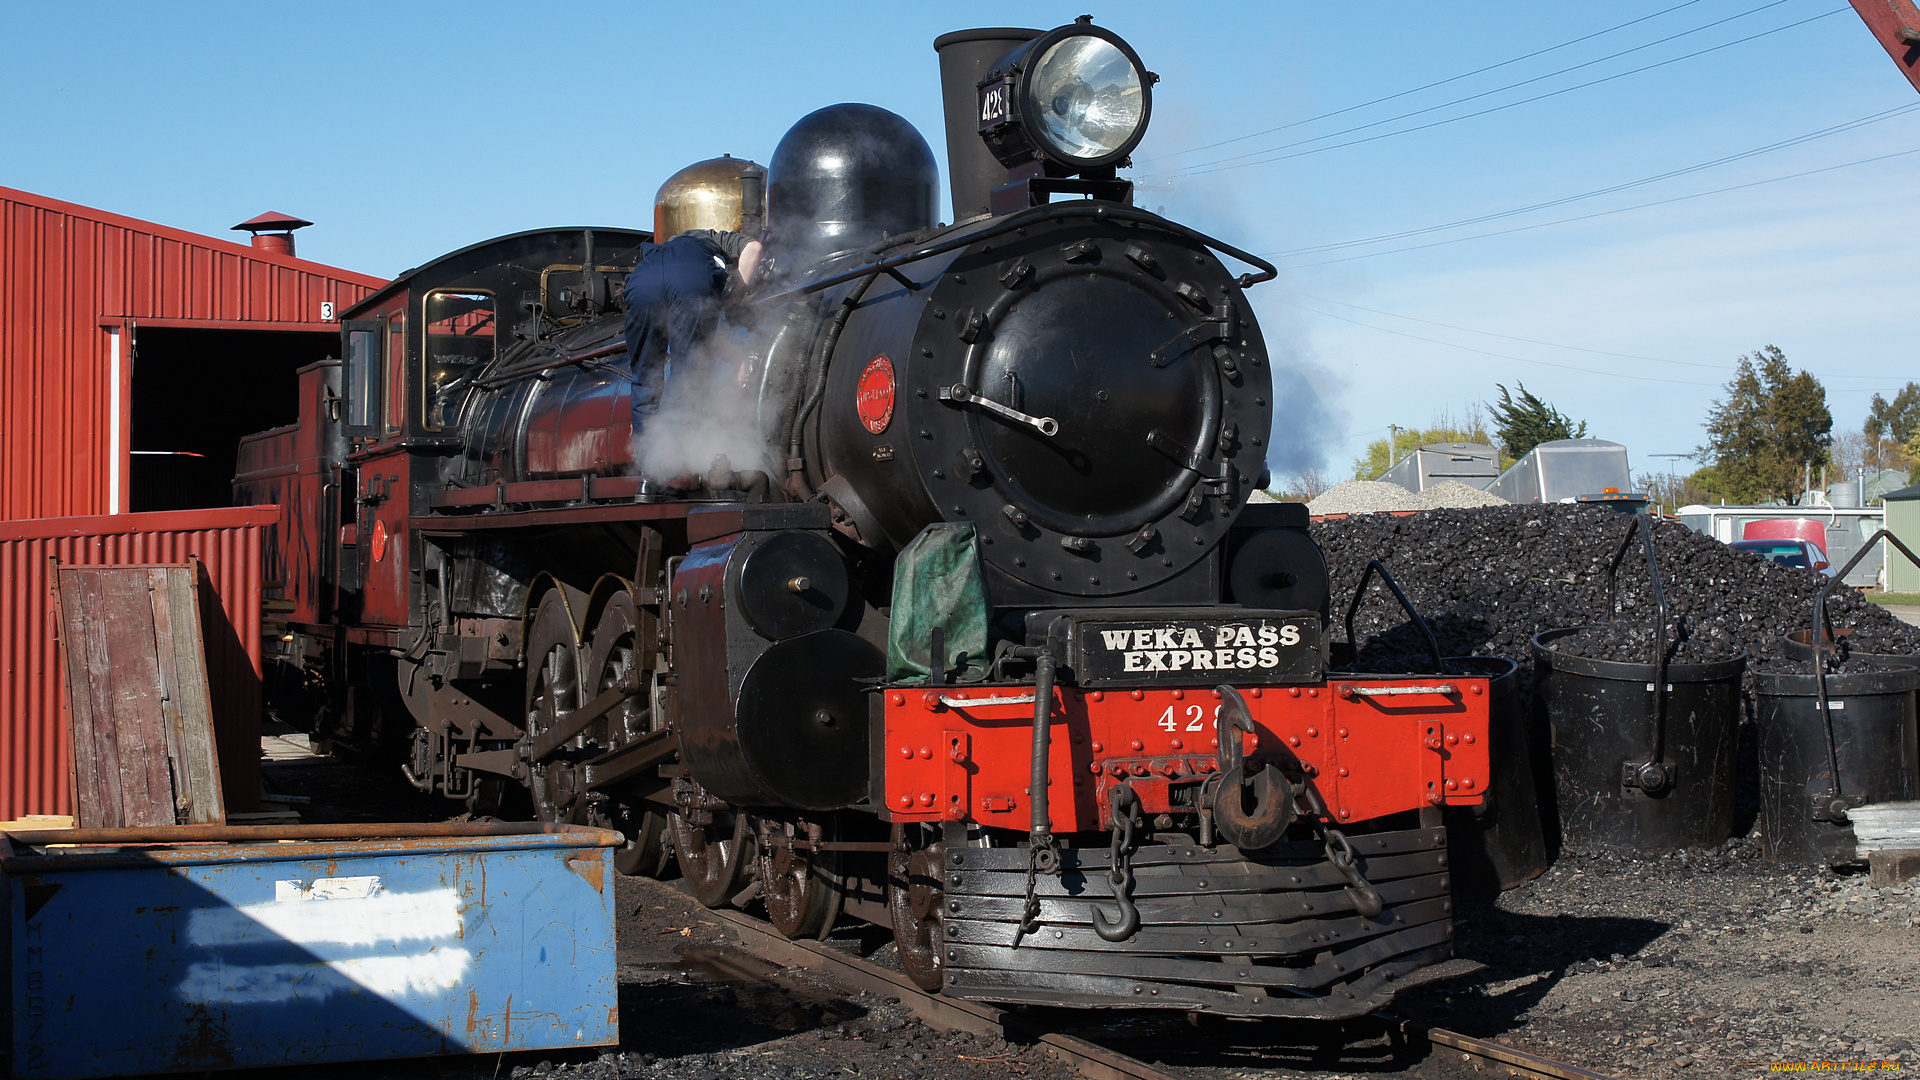 ex, nzr, a428, steam, locomotiv, техника, паровозы, паровоз, уголь, локомотив